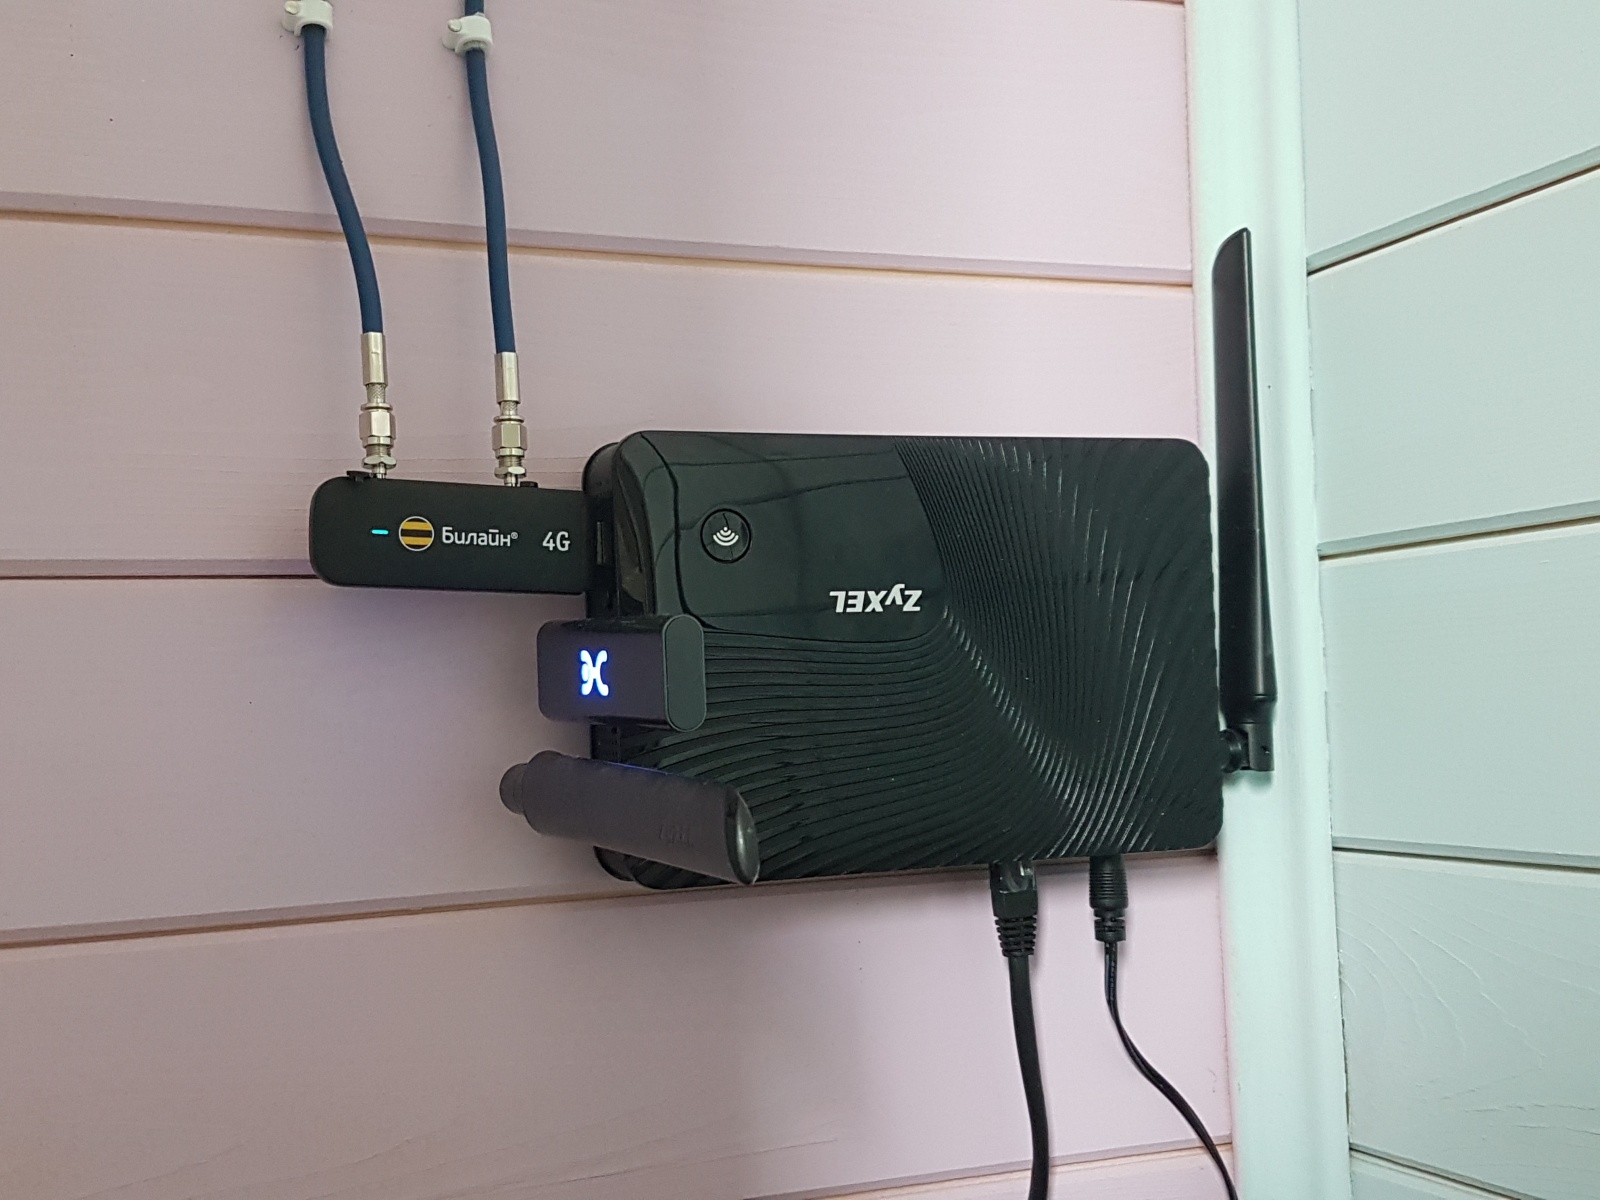 Роутер Zyxel с двумя USB-модемами, закрепленный на стене. К модему подключены провода от внешних антенн.